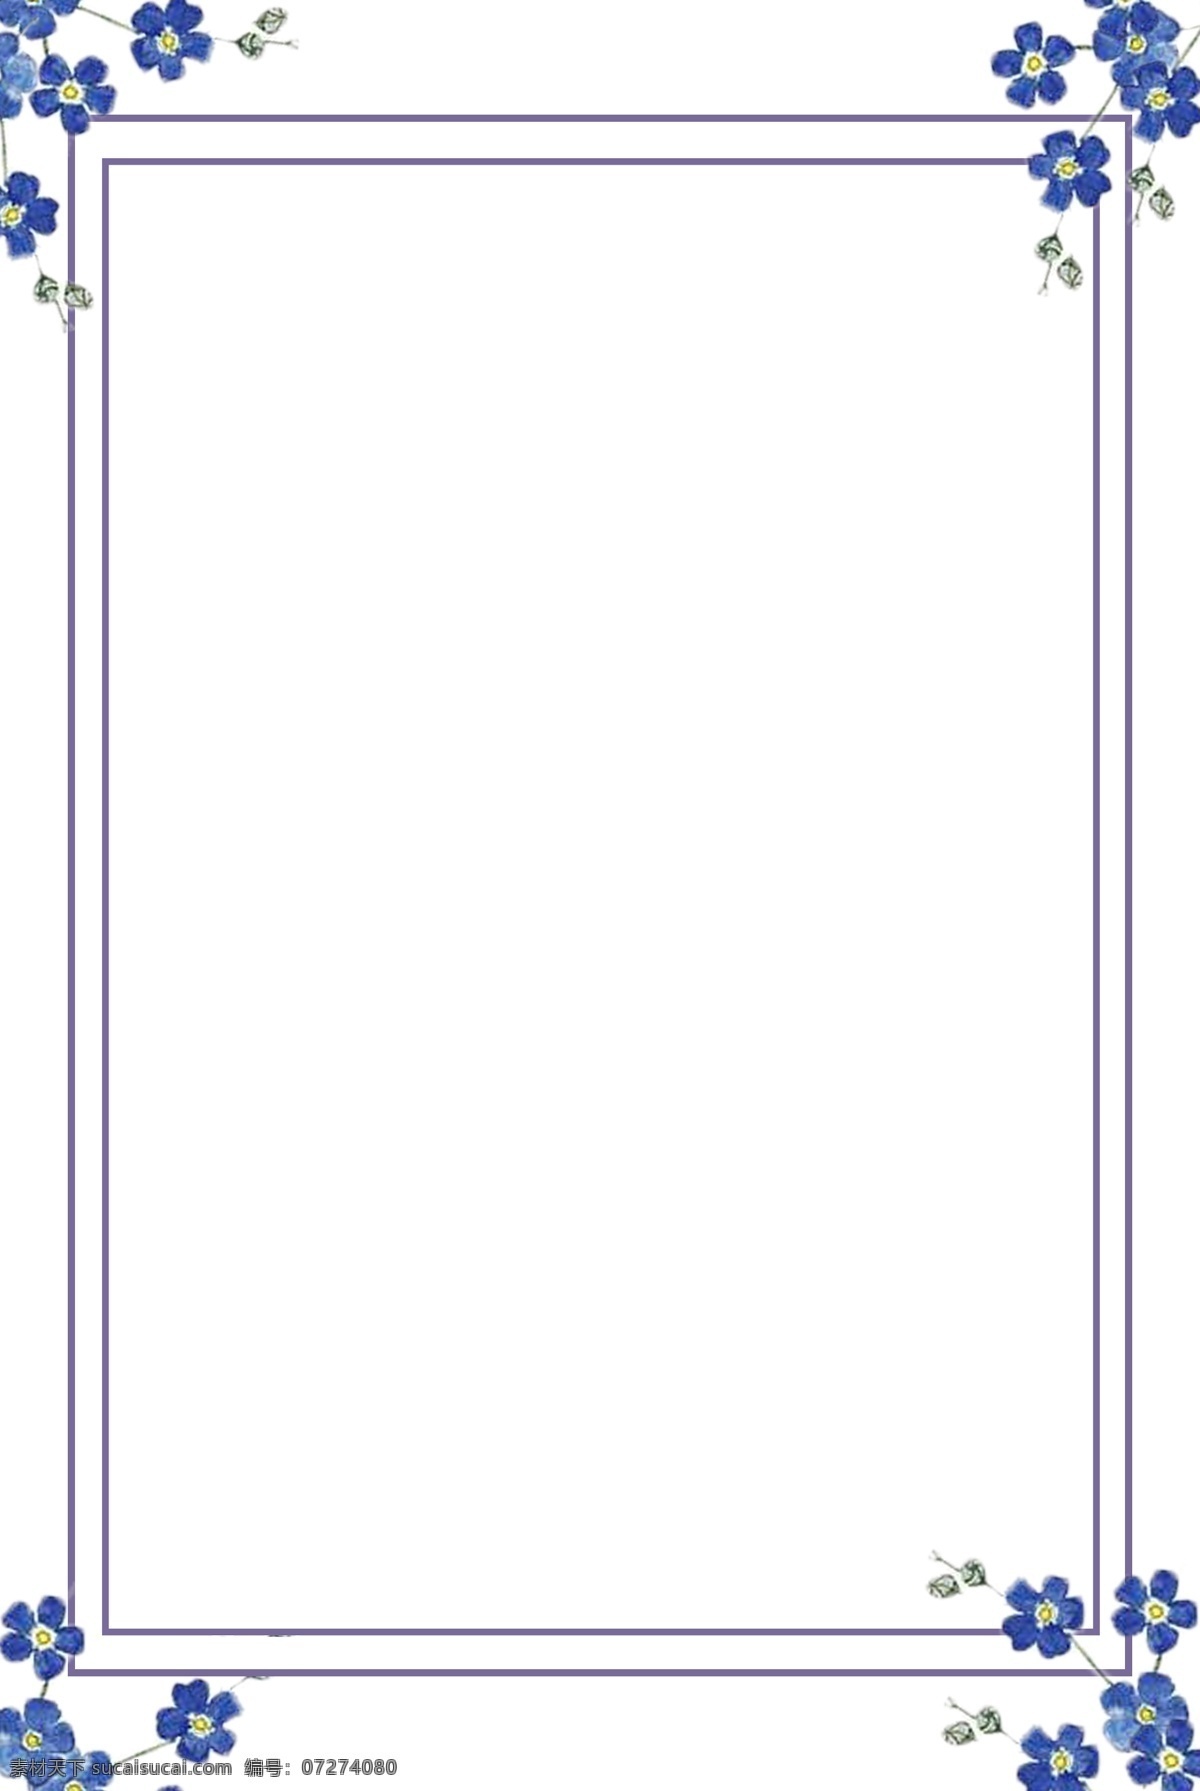 手绘 唯美 紫色 淡雅 边框 手绘边框 创意边框 简约边框 唯美边框 花物语 紫色边框 可爱 用于 学习交流 海报制作 装饰等